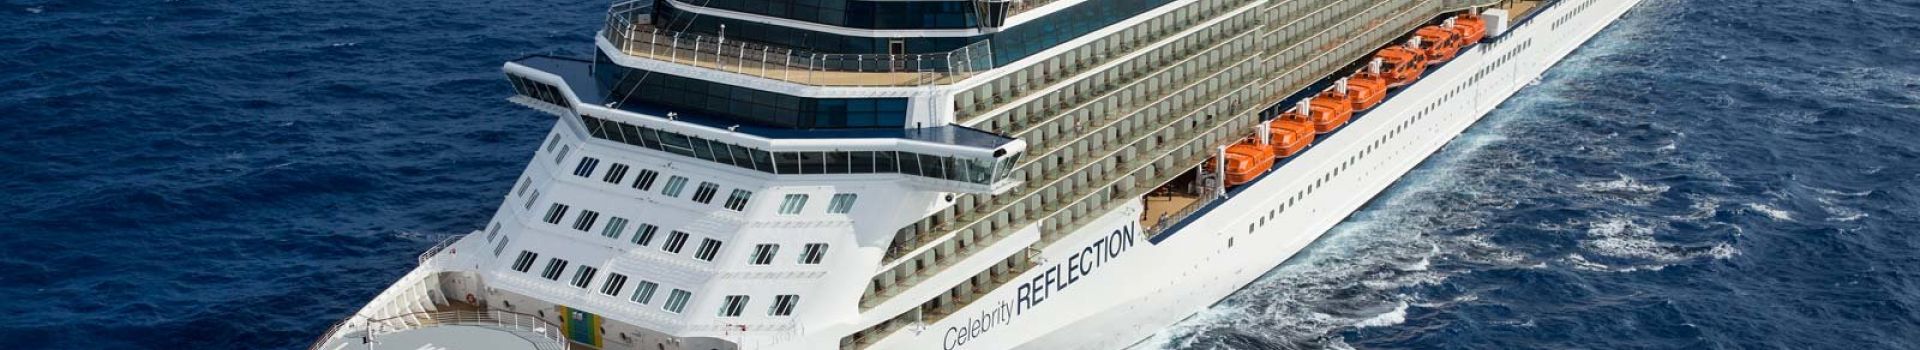 Celebrity Cruises | Celebrity Reflection